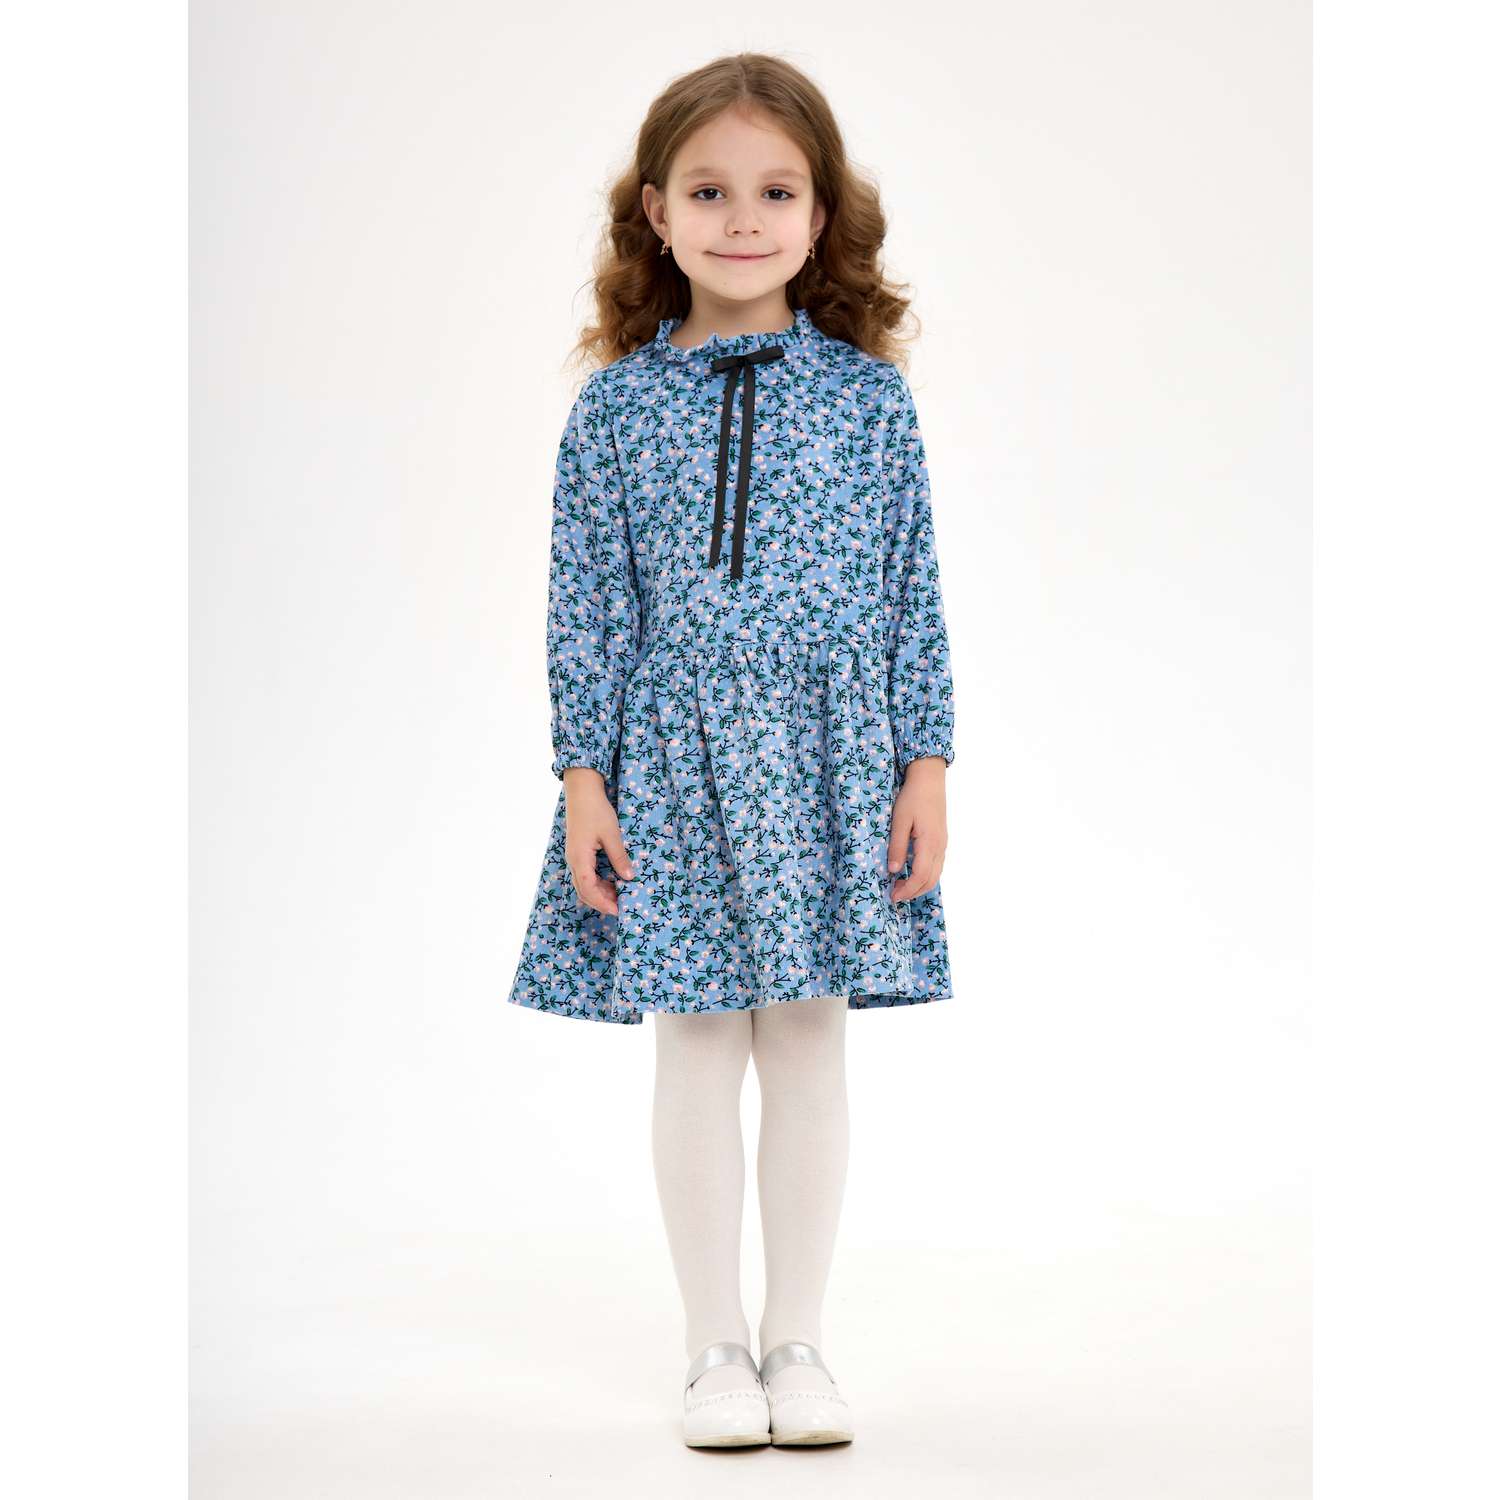 Платье CHILDREAM платье из микровельвета голубое - фото 2